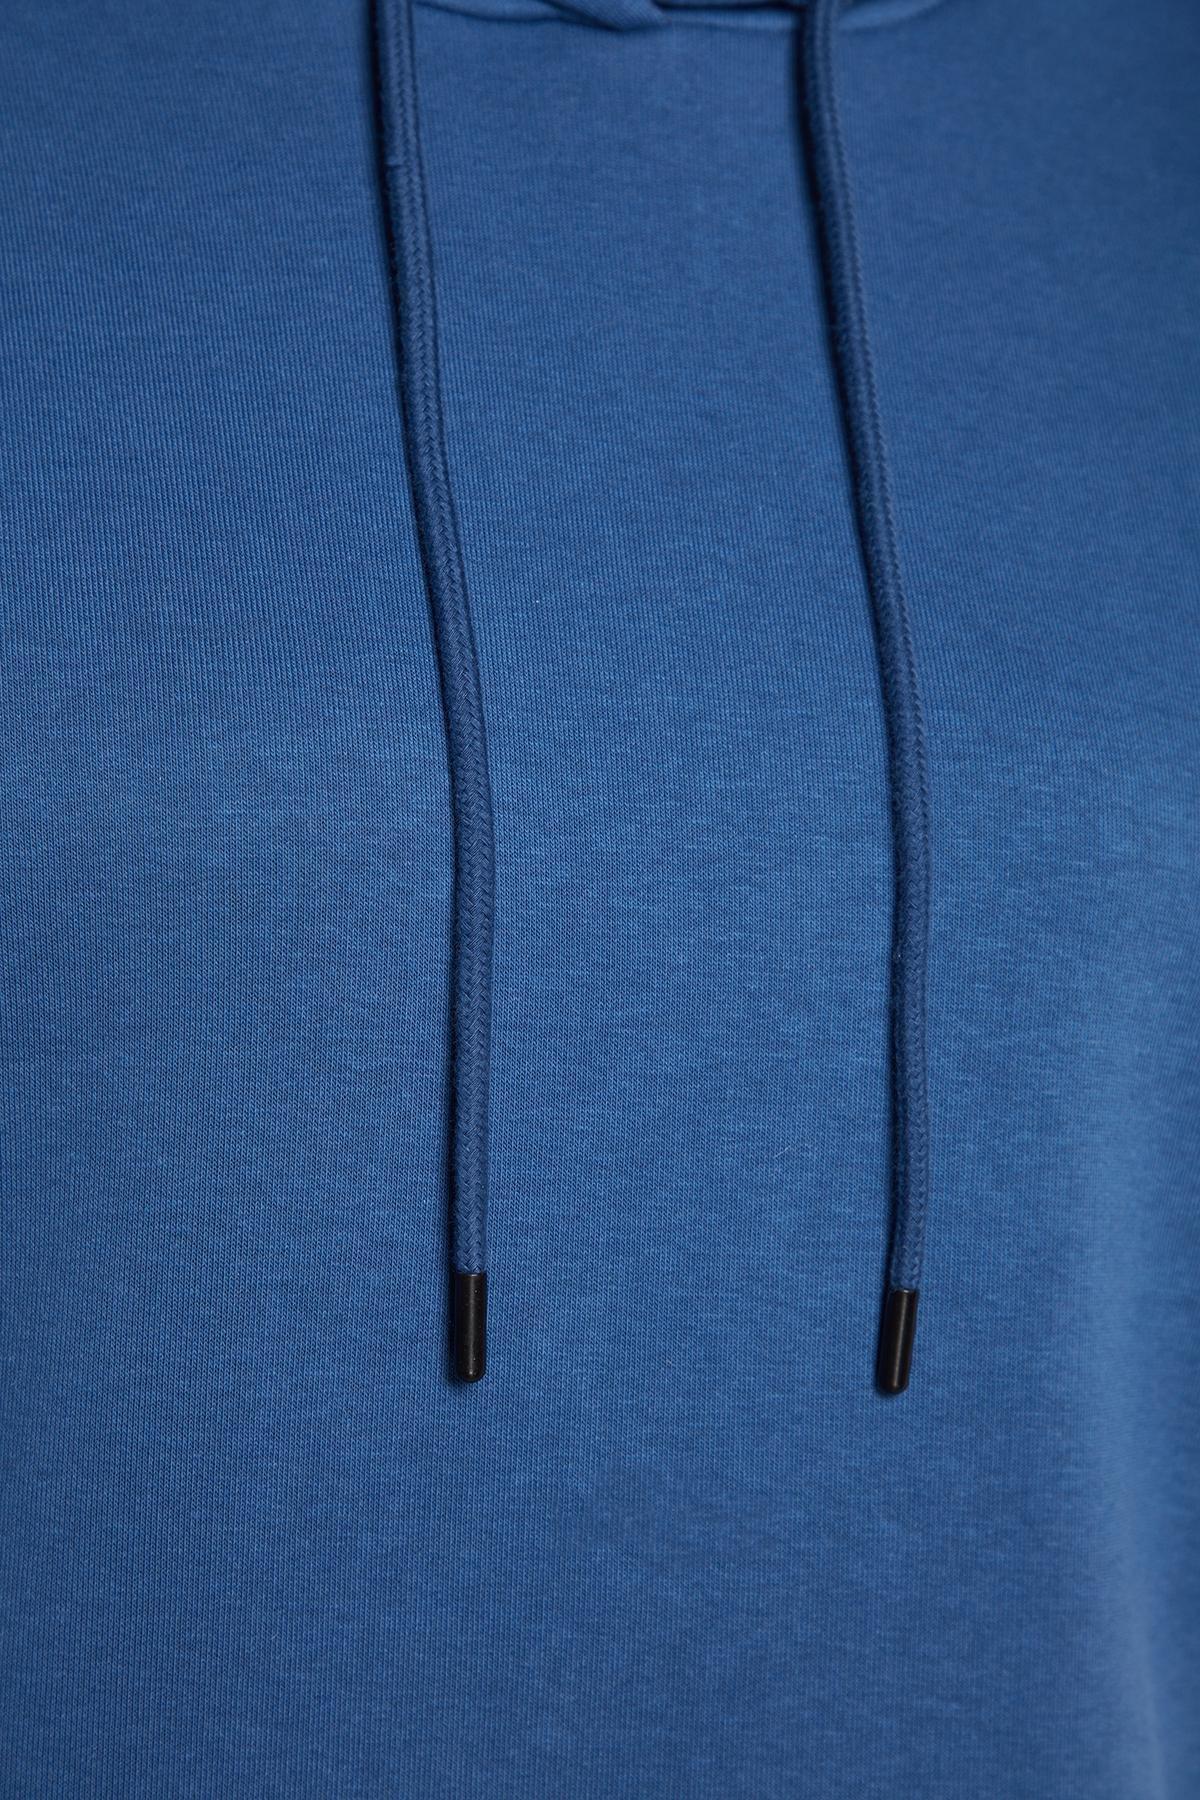 Trendyol - Blue Detailed Hooded Knitted Sweatshirt